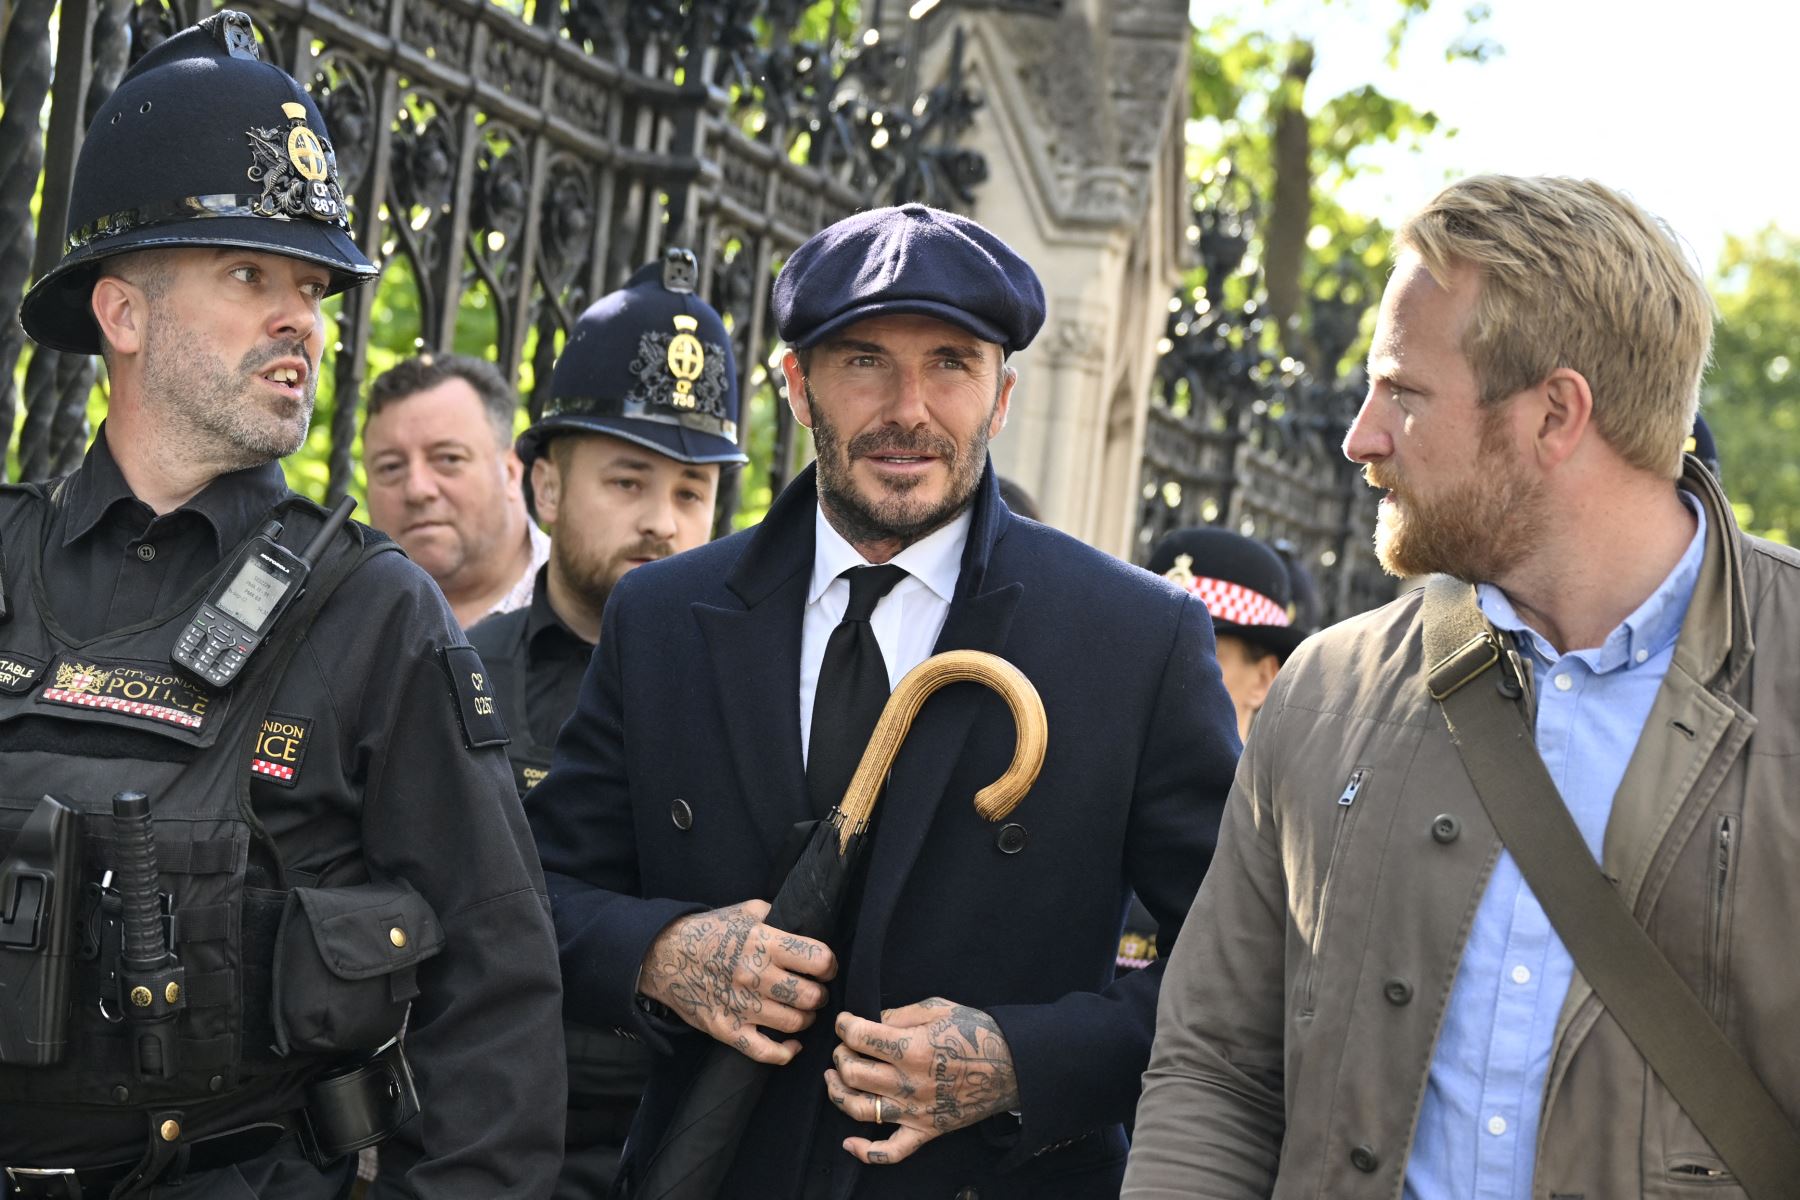 La gente, al descubrir a Beckham entre la multitud, se ha hecho fotos con el exfutbolista, interrumpiendo el normal avance de la cola. Foto: AFP